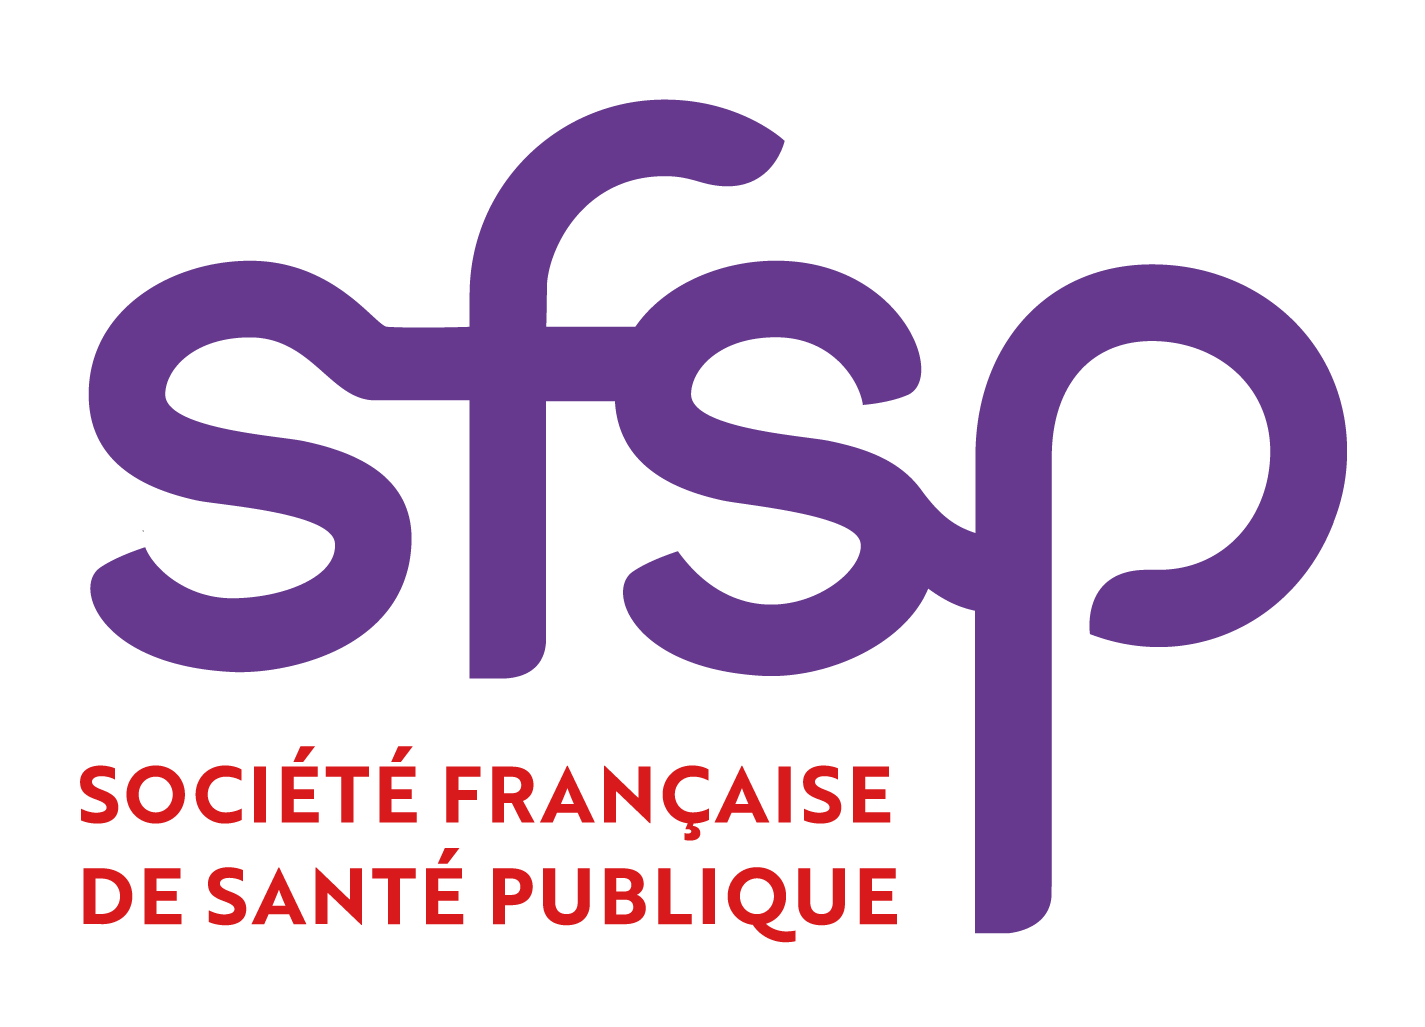 Société Française de Santé Publique (SFSP)